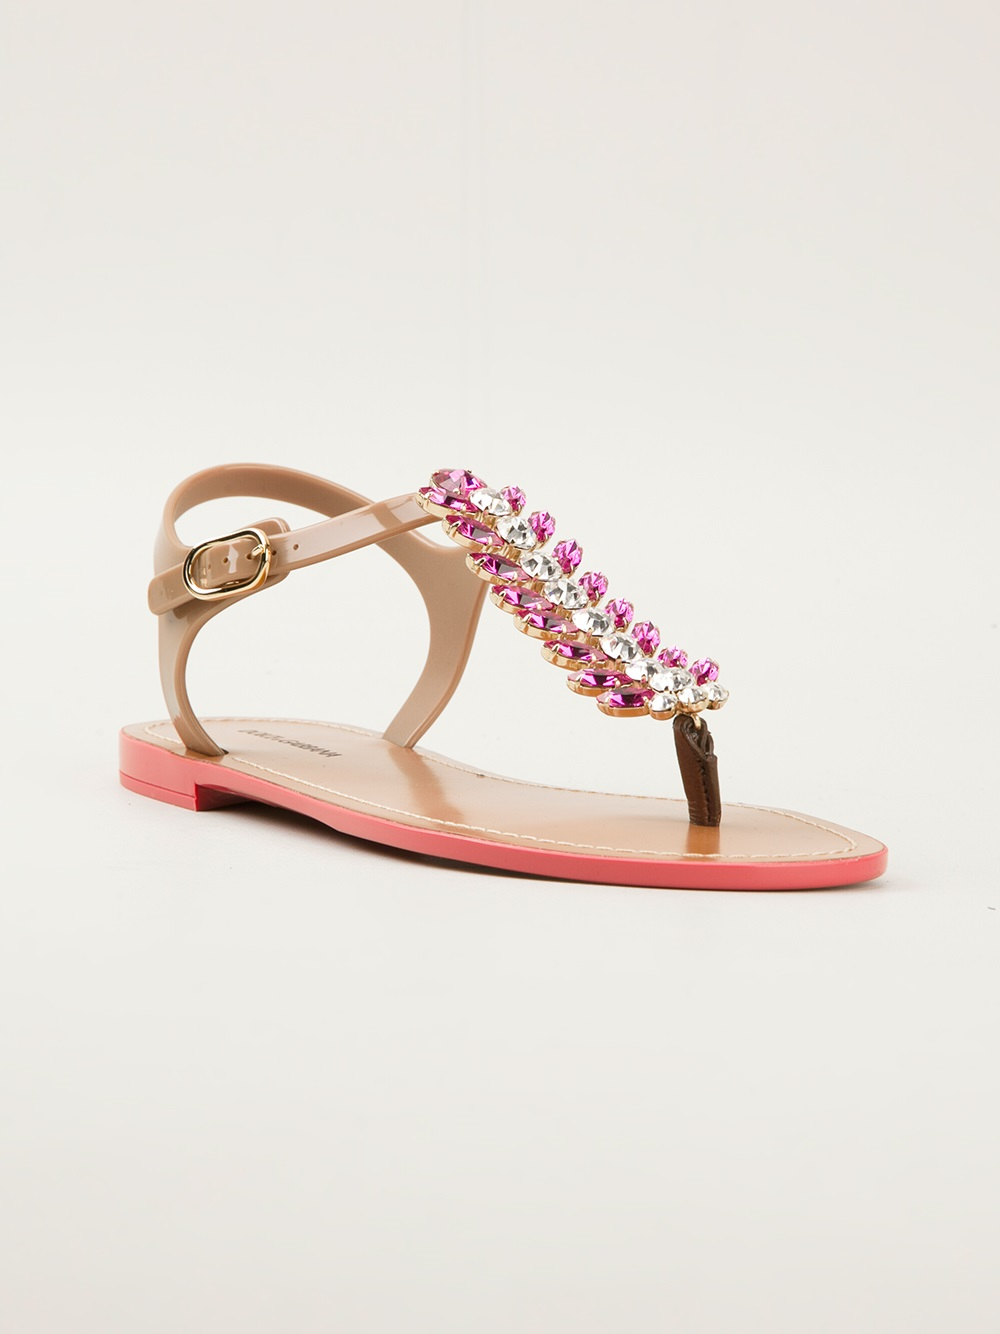 dolce gabbana embellished sandals